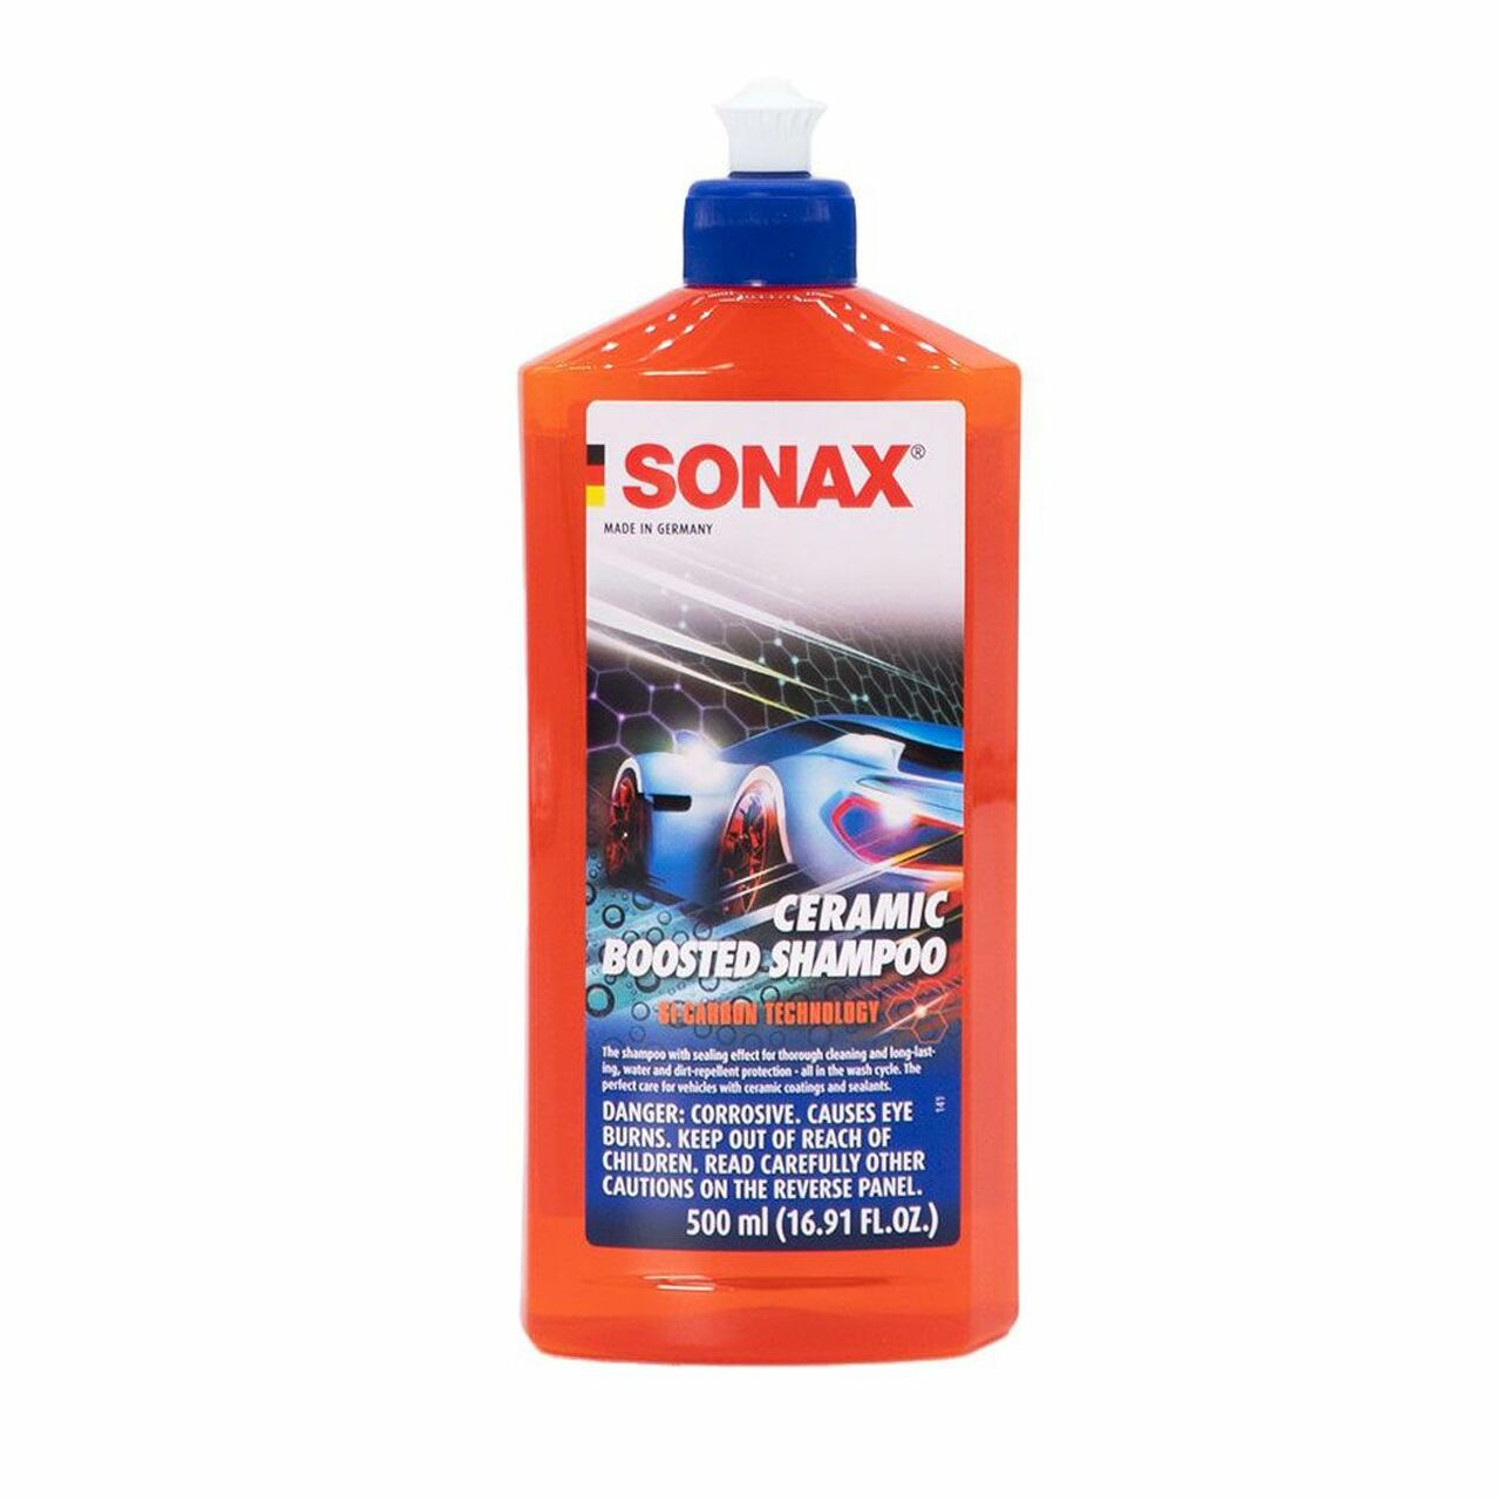 SONAX Spray + Seal & Car Wash Shampoo Concentrate Bundle